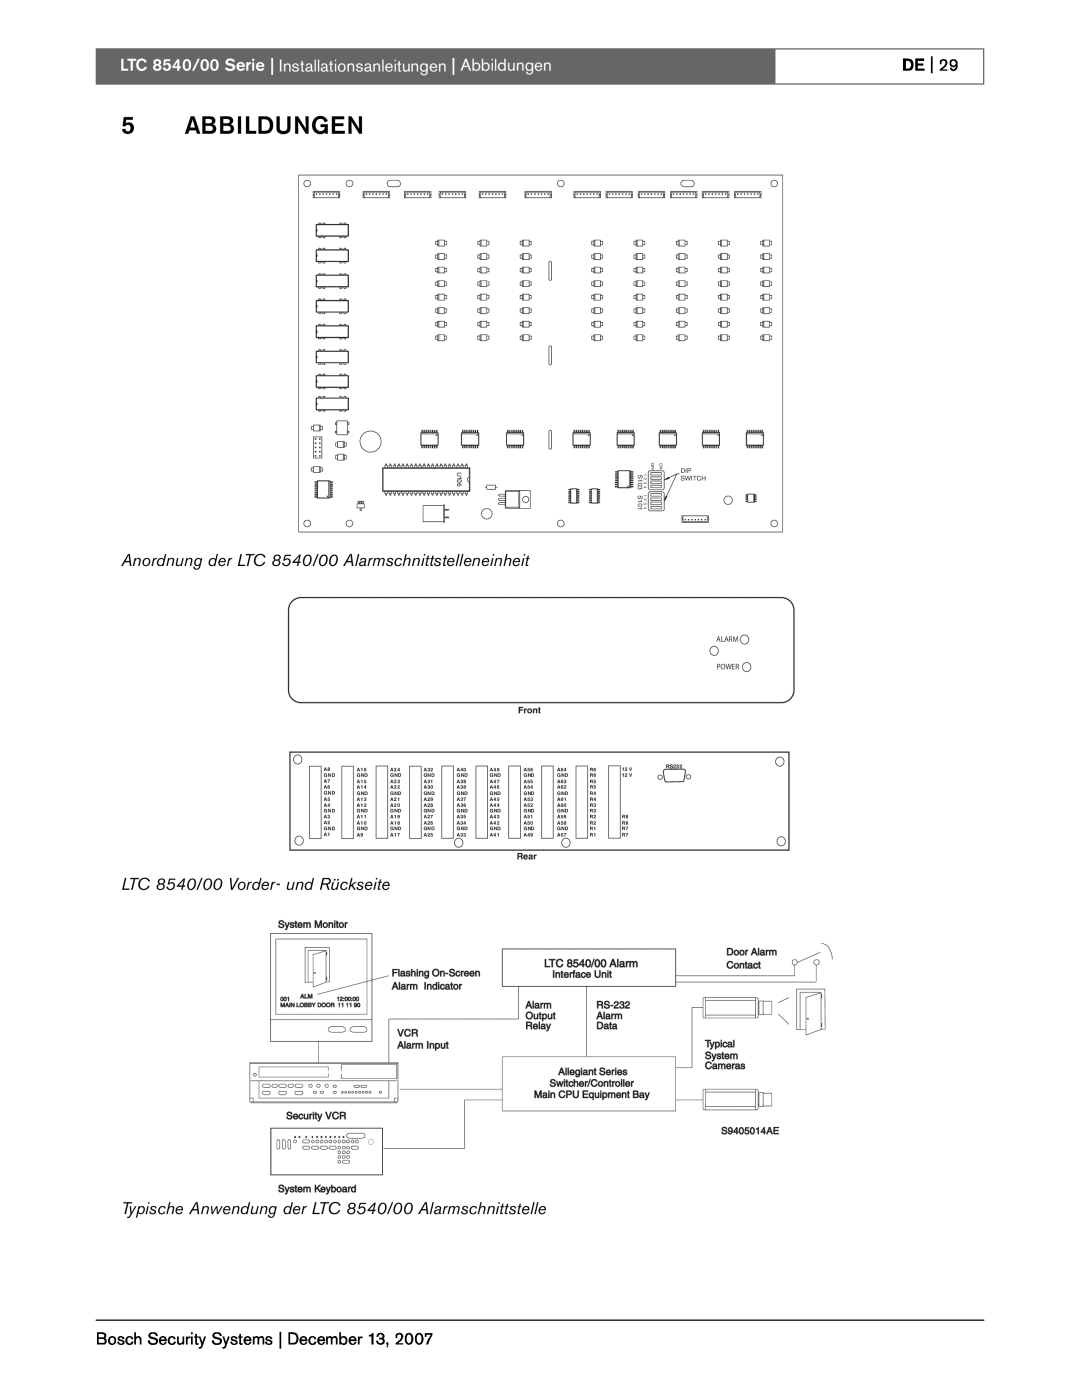 Bosch Appliances LTC 8540/00 instruction manual 5ABBILDUNGEN, De 